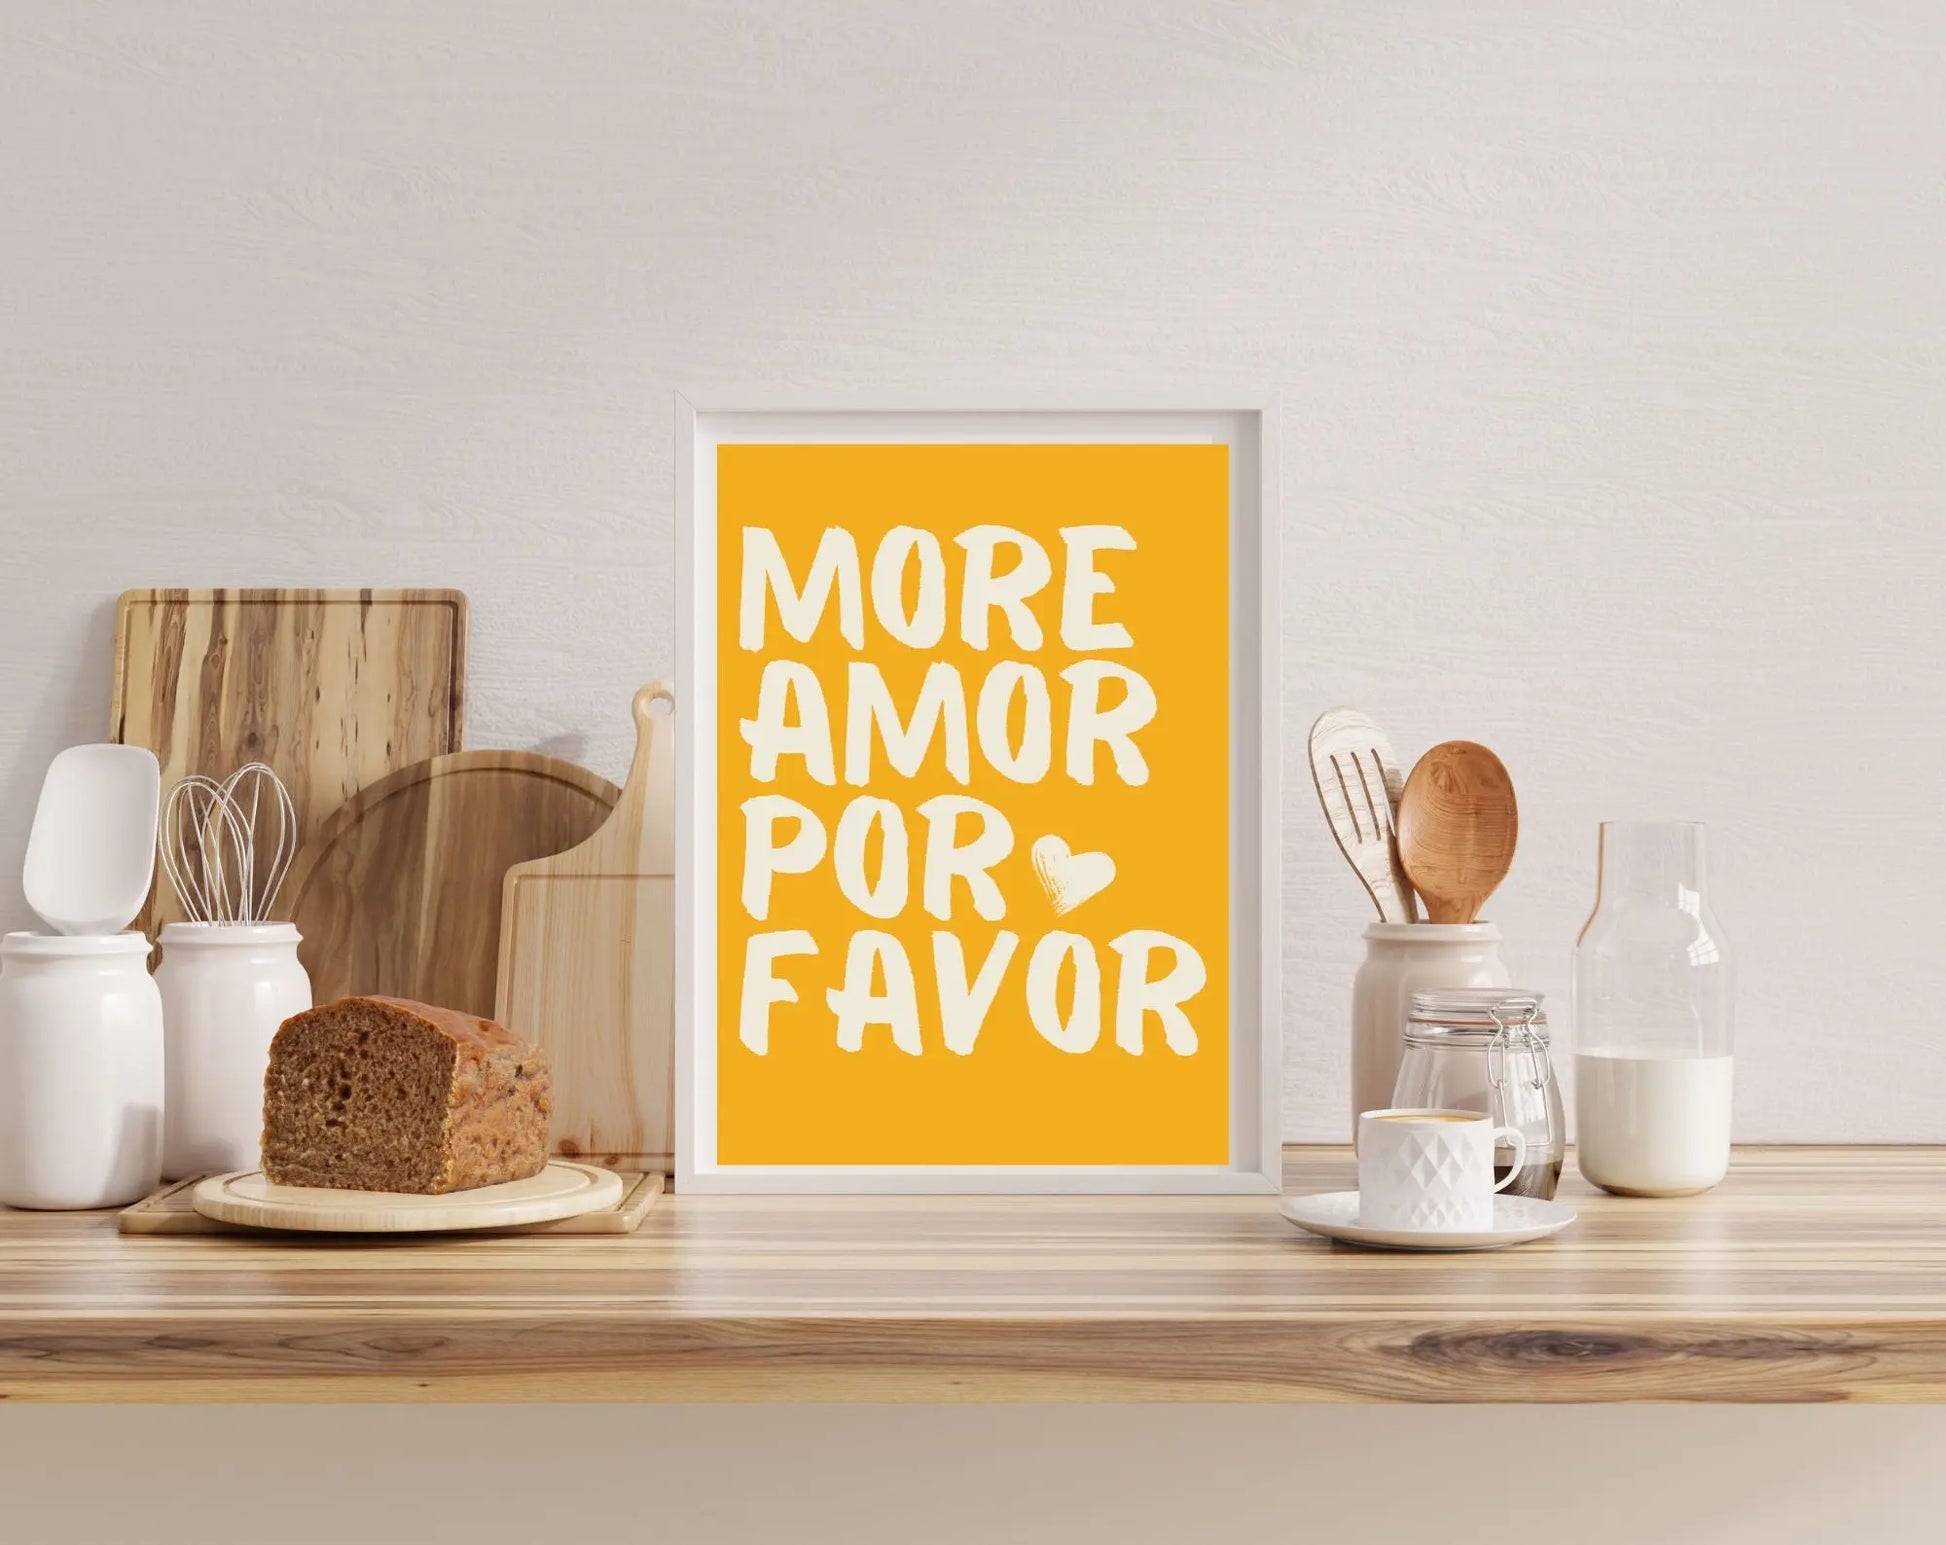 Affiche More Amor Por Favor jaune - Affiche de citation d'amour FLTMfrance